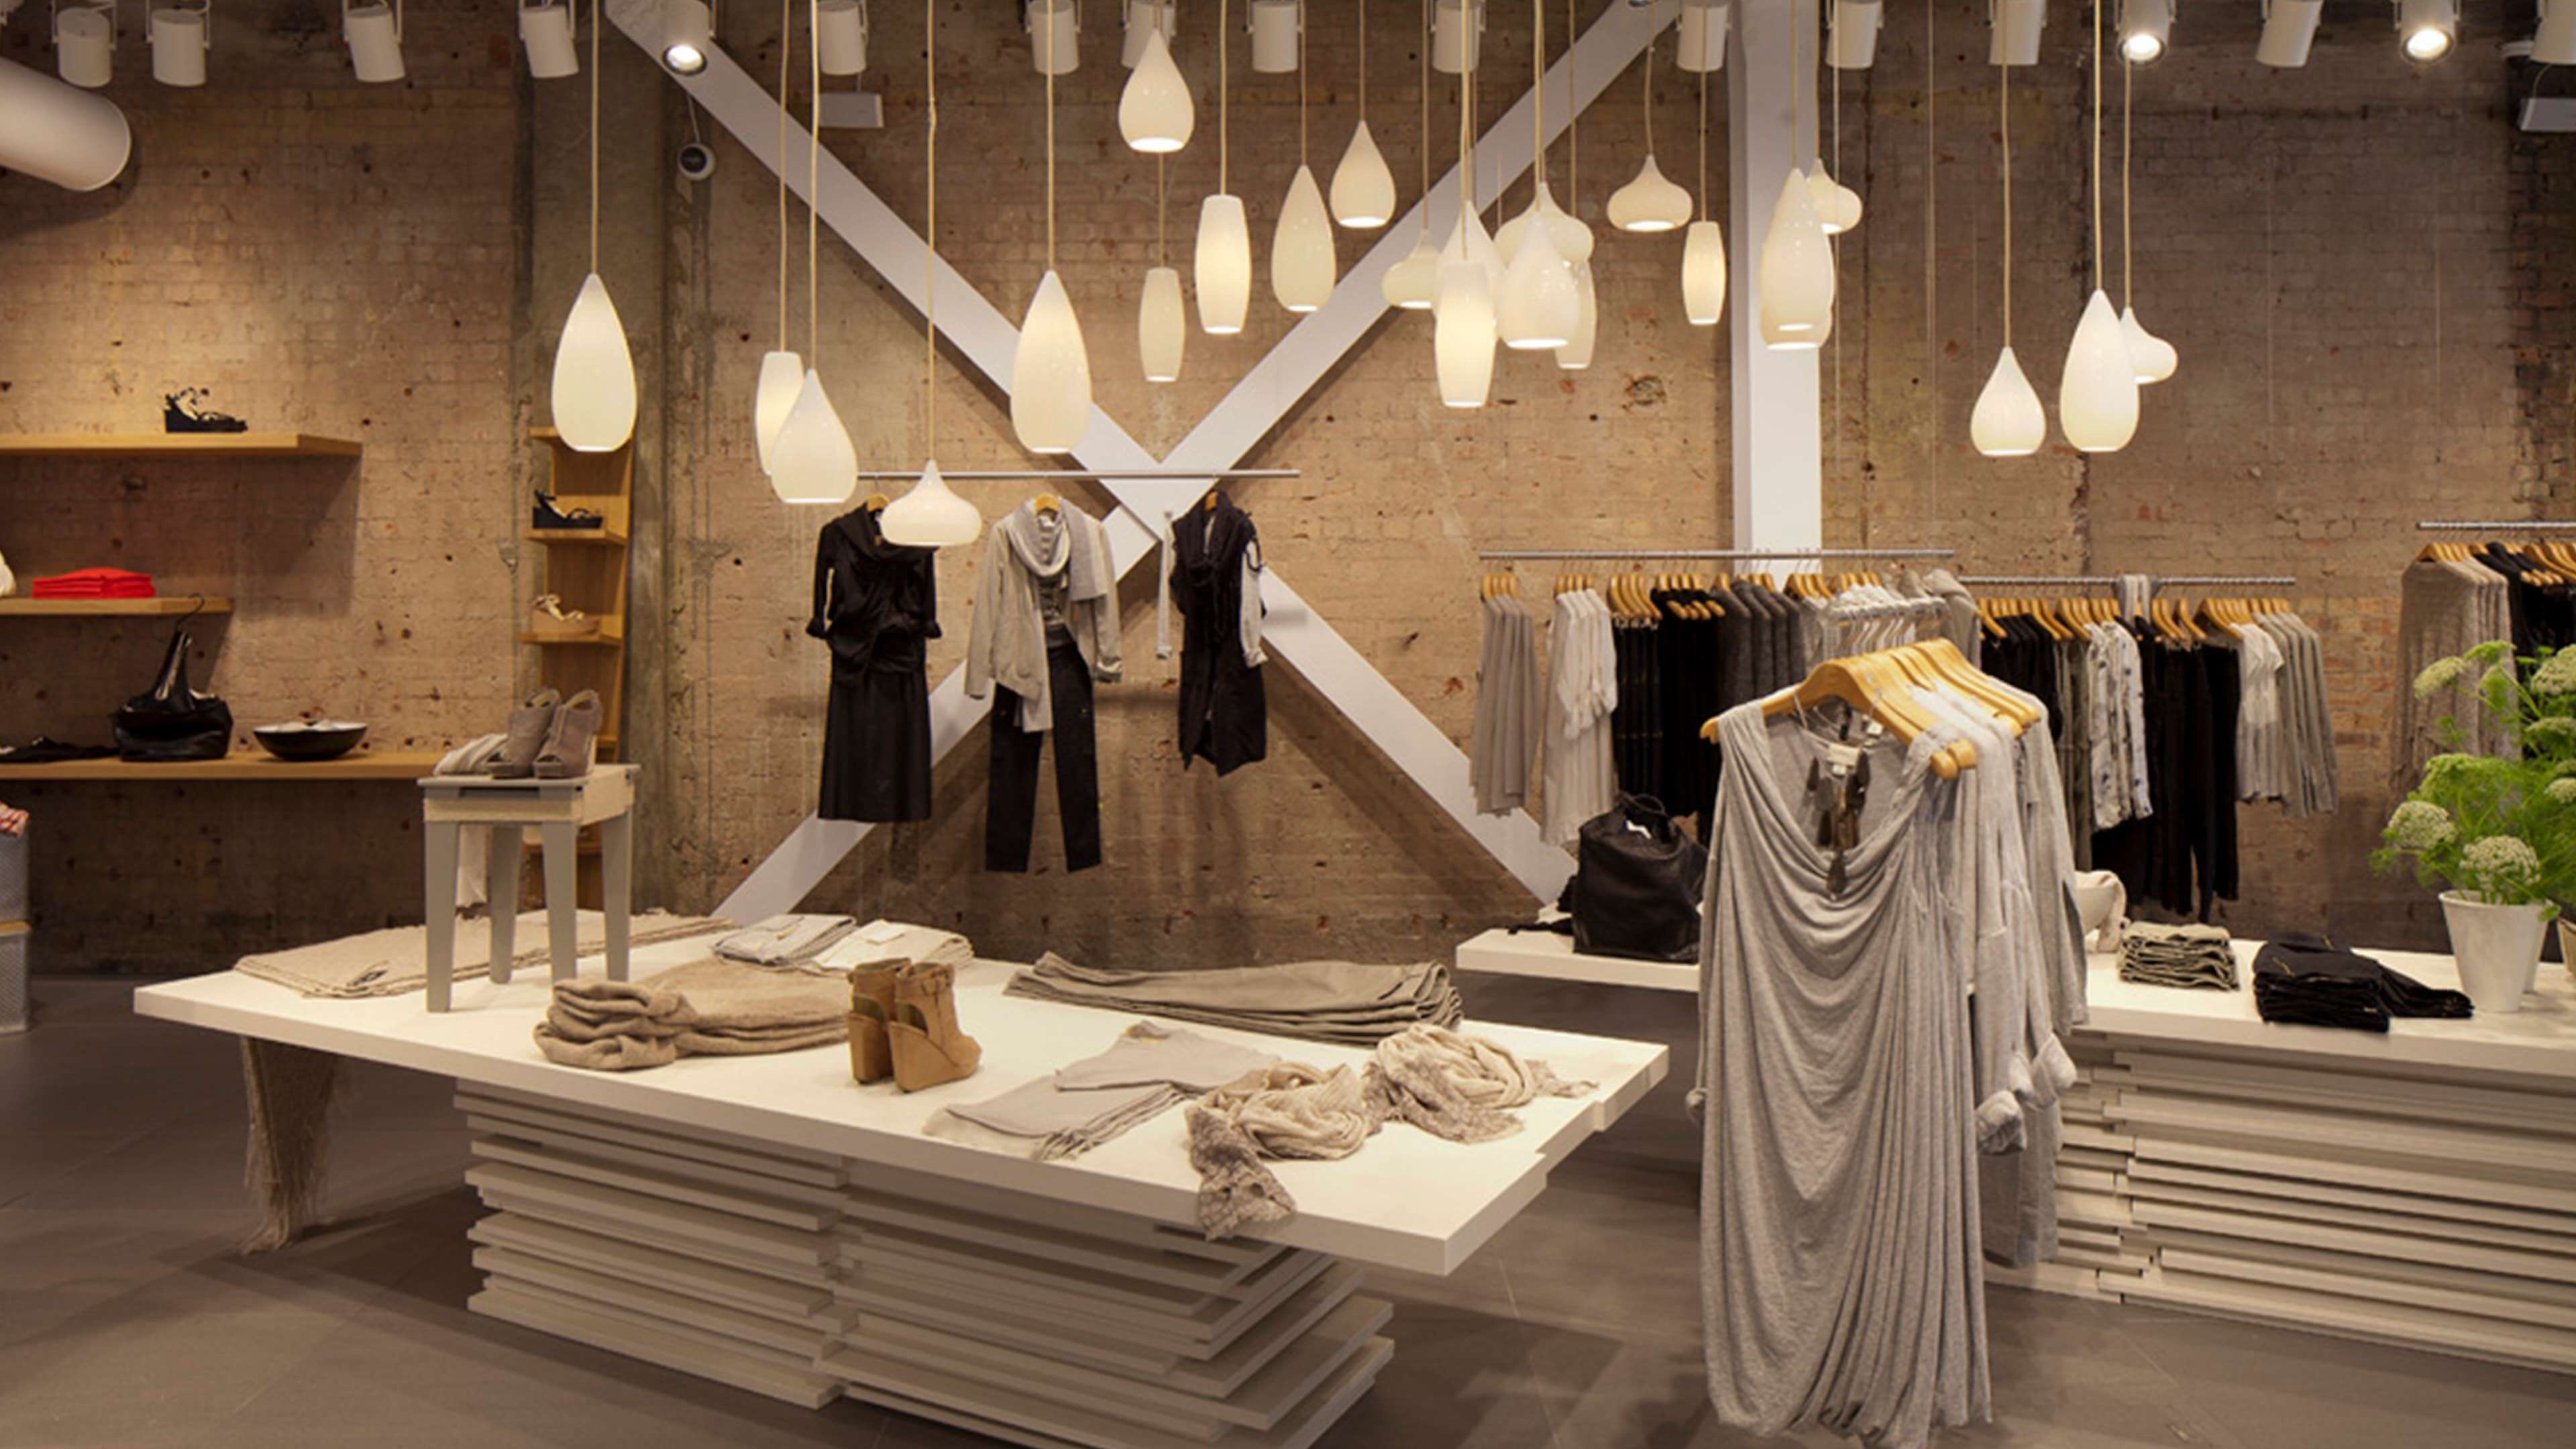 Shop thời trang sử dụng đèn thả giúp cửa hàng tràn ngập ánh sáng 